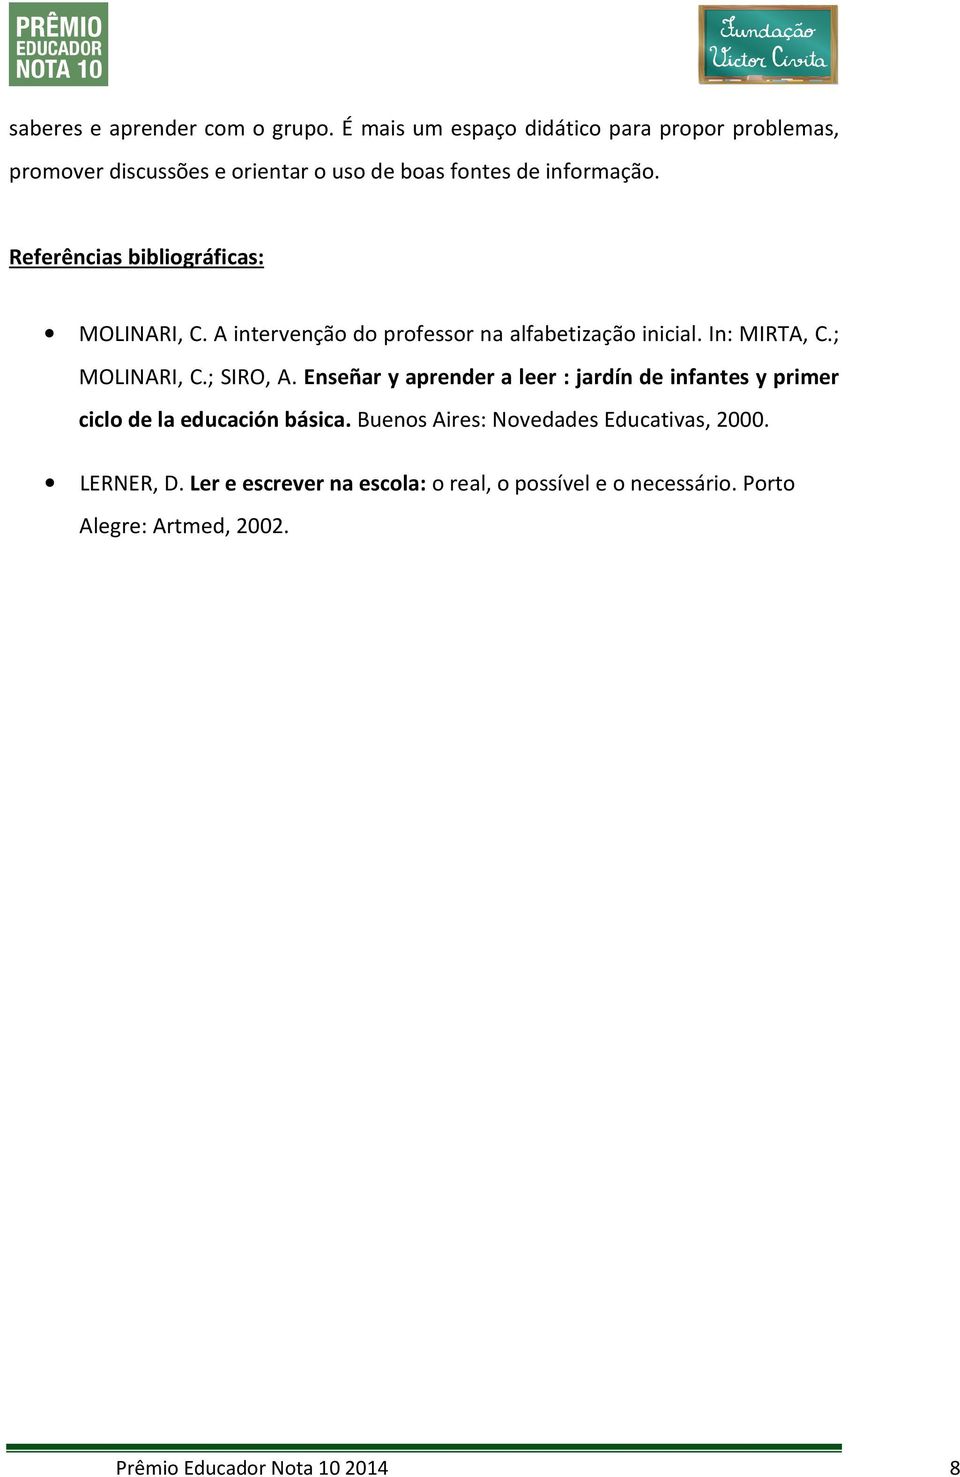 Referências bibliográficas: MOLINARI, C. A intervenção do professor na alfabetização inicial. In: MIRTA, C.; MOLINARI, C.; SIRO, A.